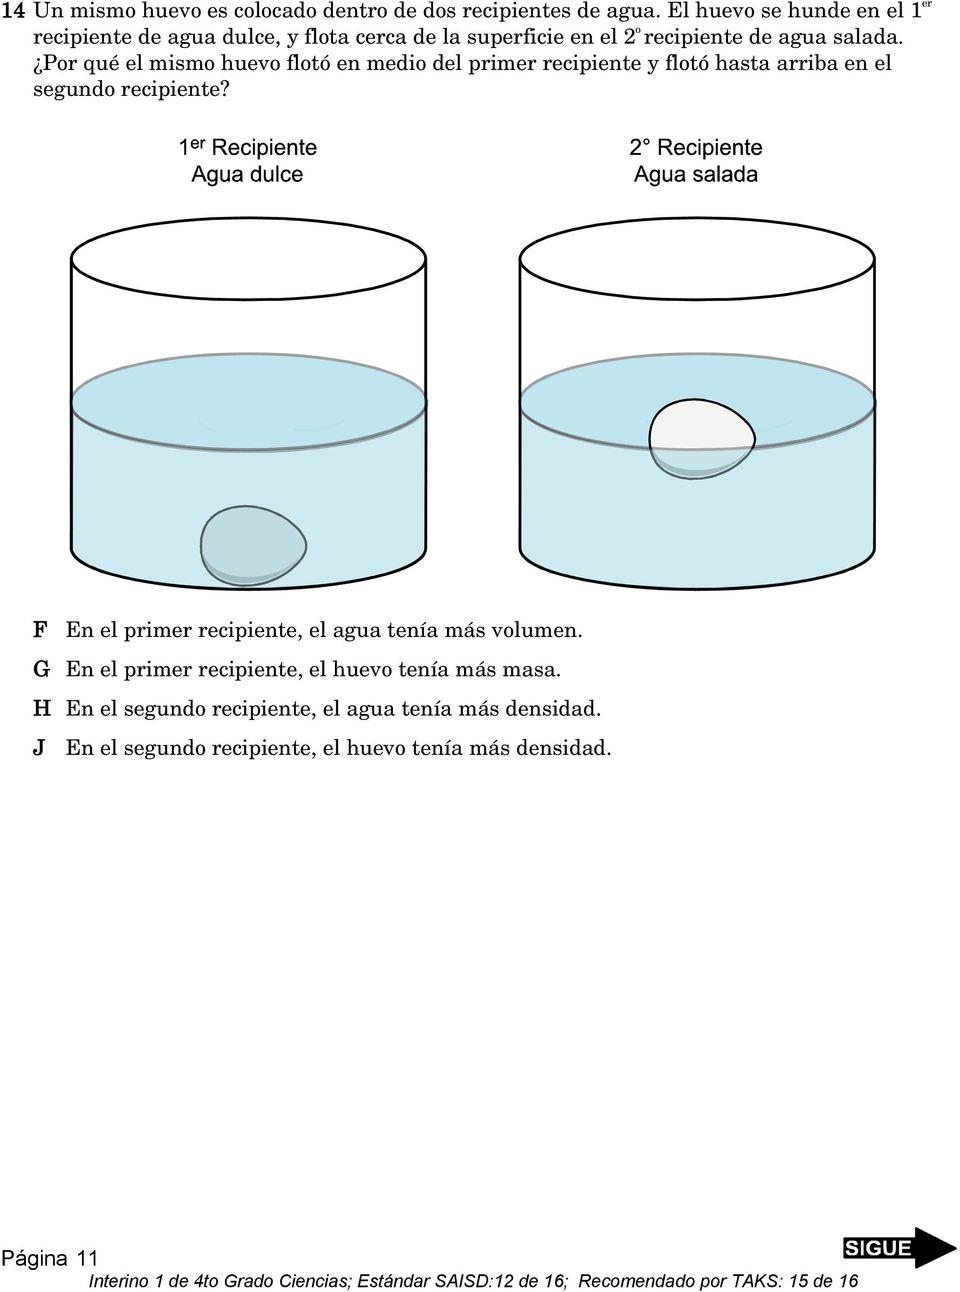 Por qué el mismo huevo flotó en medio del primer recipiente y flotó hasta arriba en el segundo recipiente?